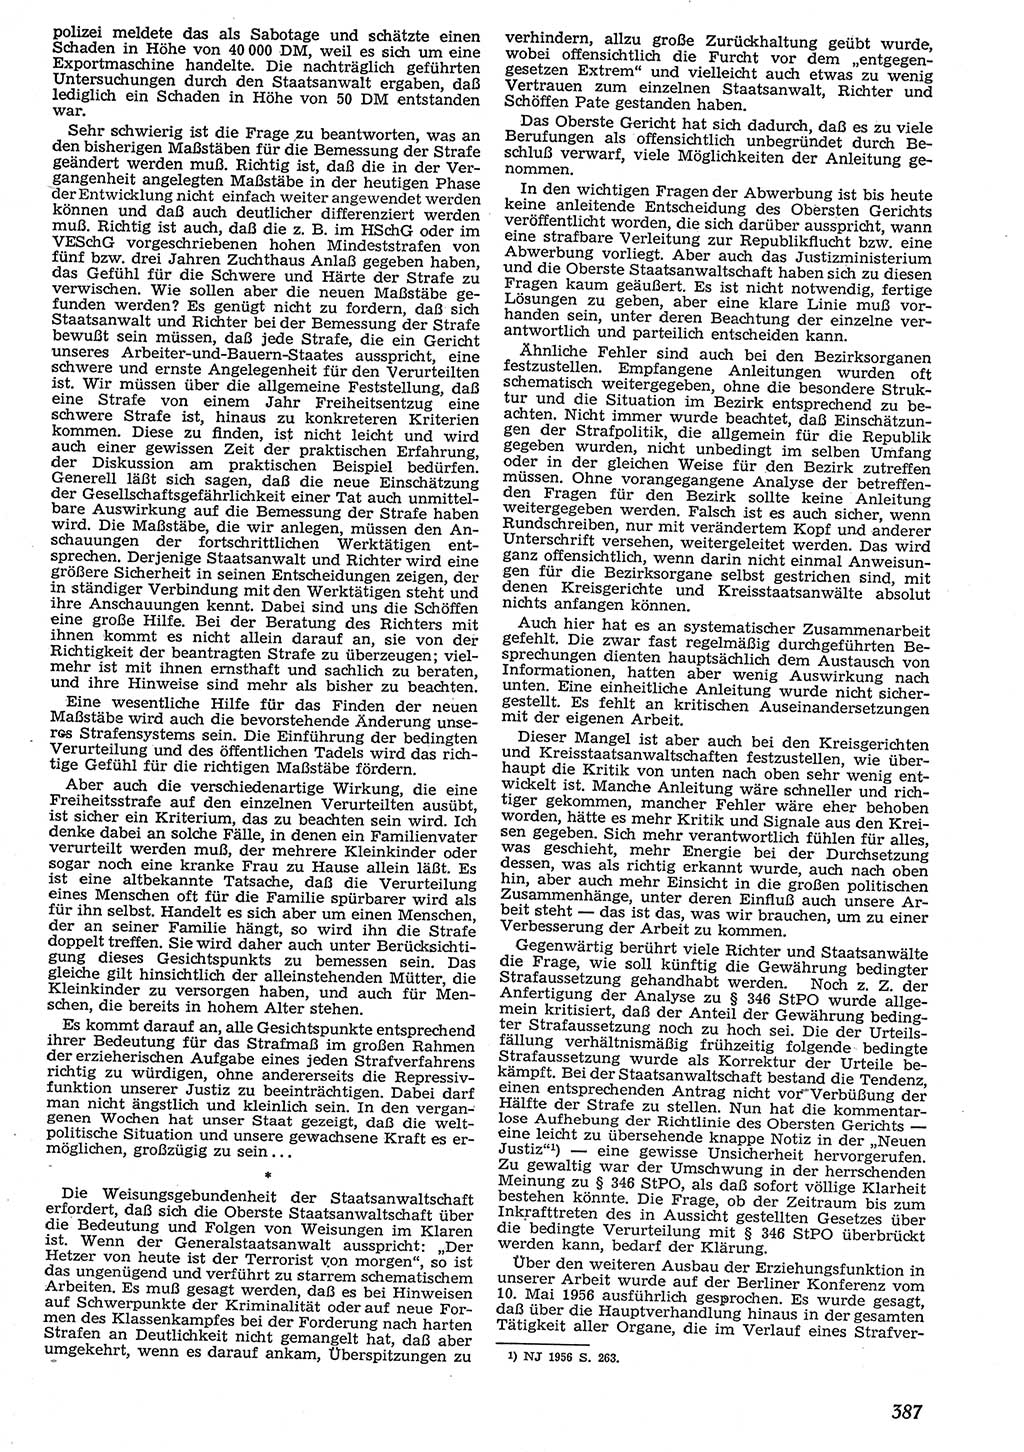 Neue Justiz (NJ), Zeitschrift für Recht und Rechtswissenschaft [Deutsche Demokratische Republik (DDR)], 10. Jahrgang 1956, Seite 387 (NJ DDR 1956, S. 387)